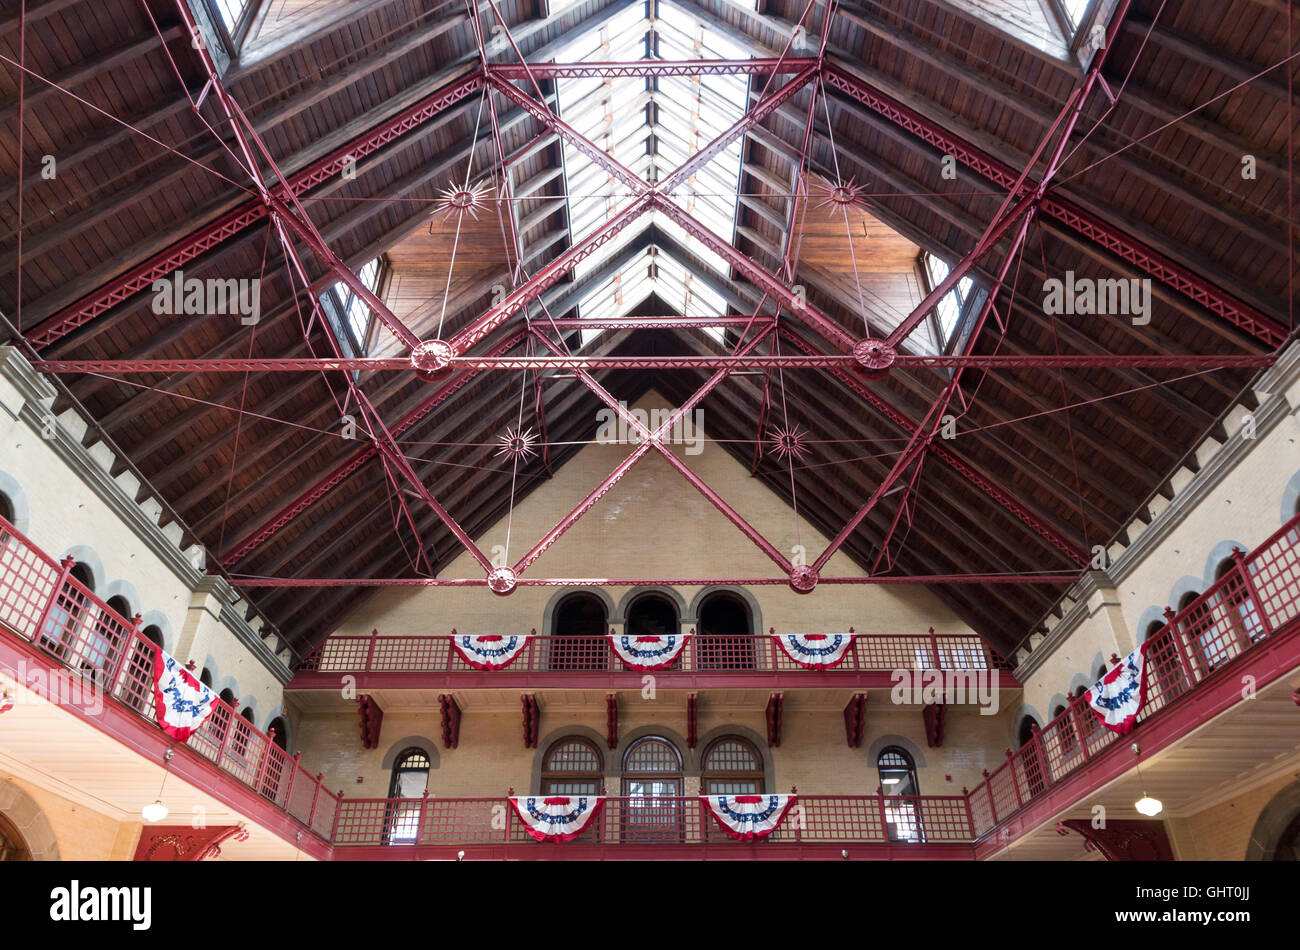 Innen- und architektonische Details von Dach und Decke des Central Railroad of New Jersey Terminals im Liberty State Park Stockfoto